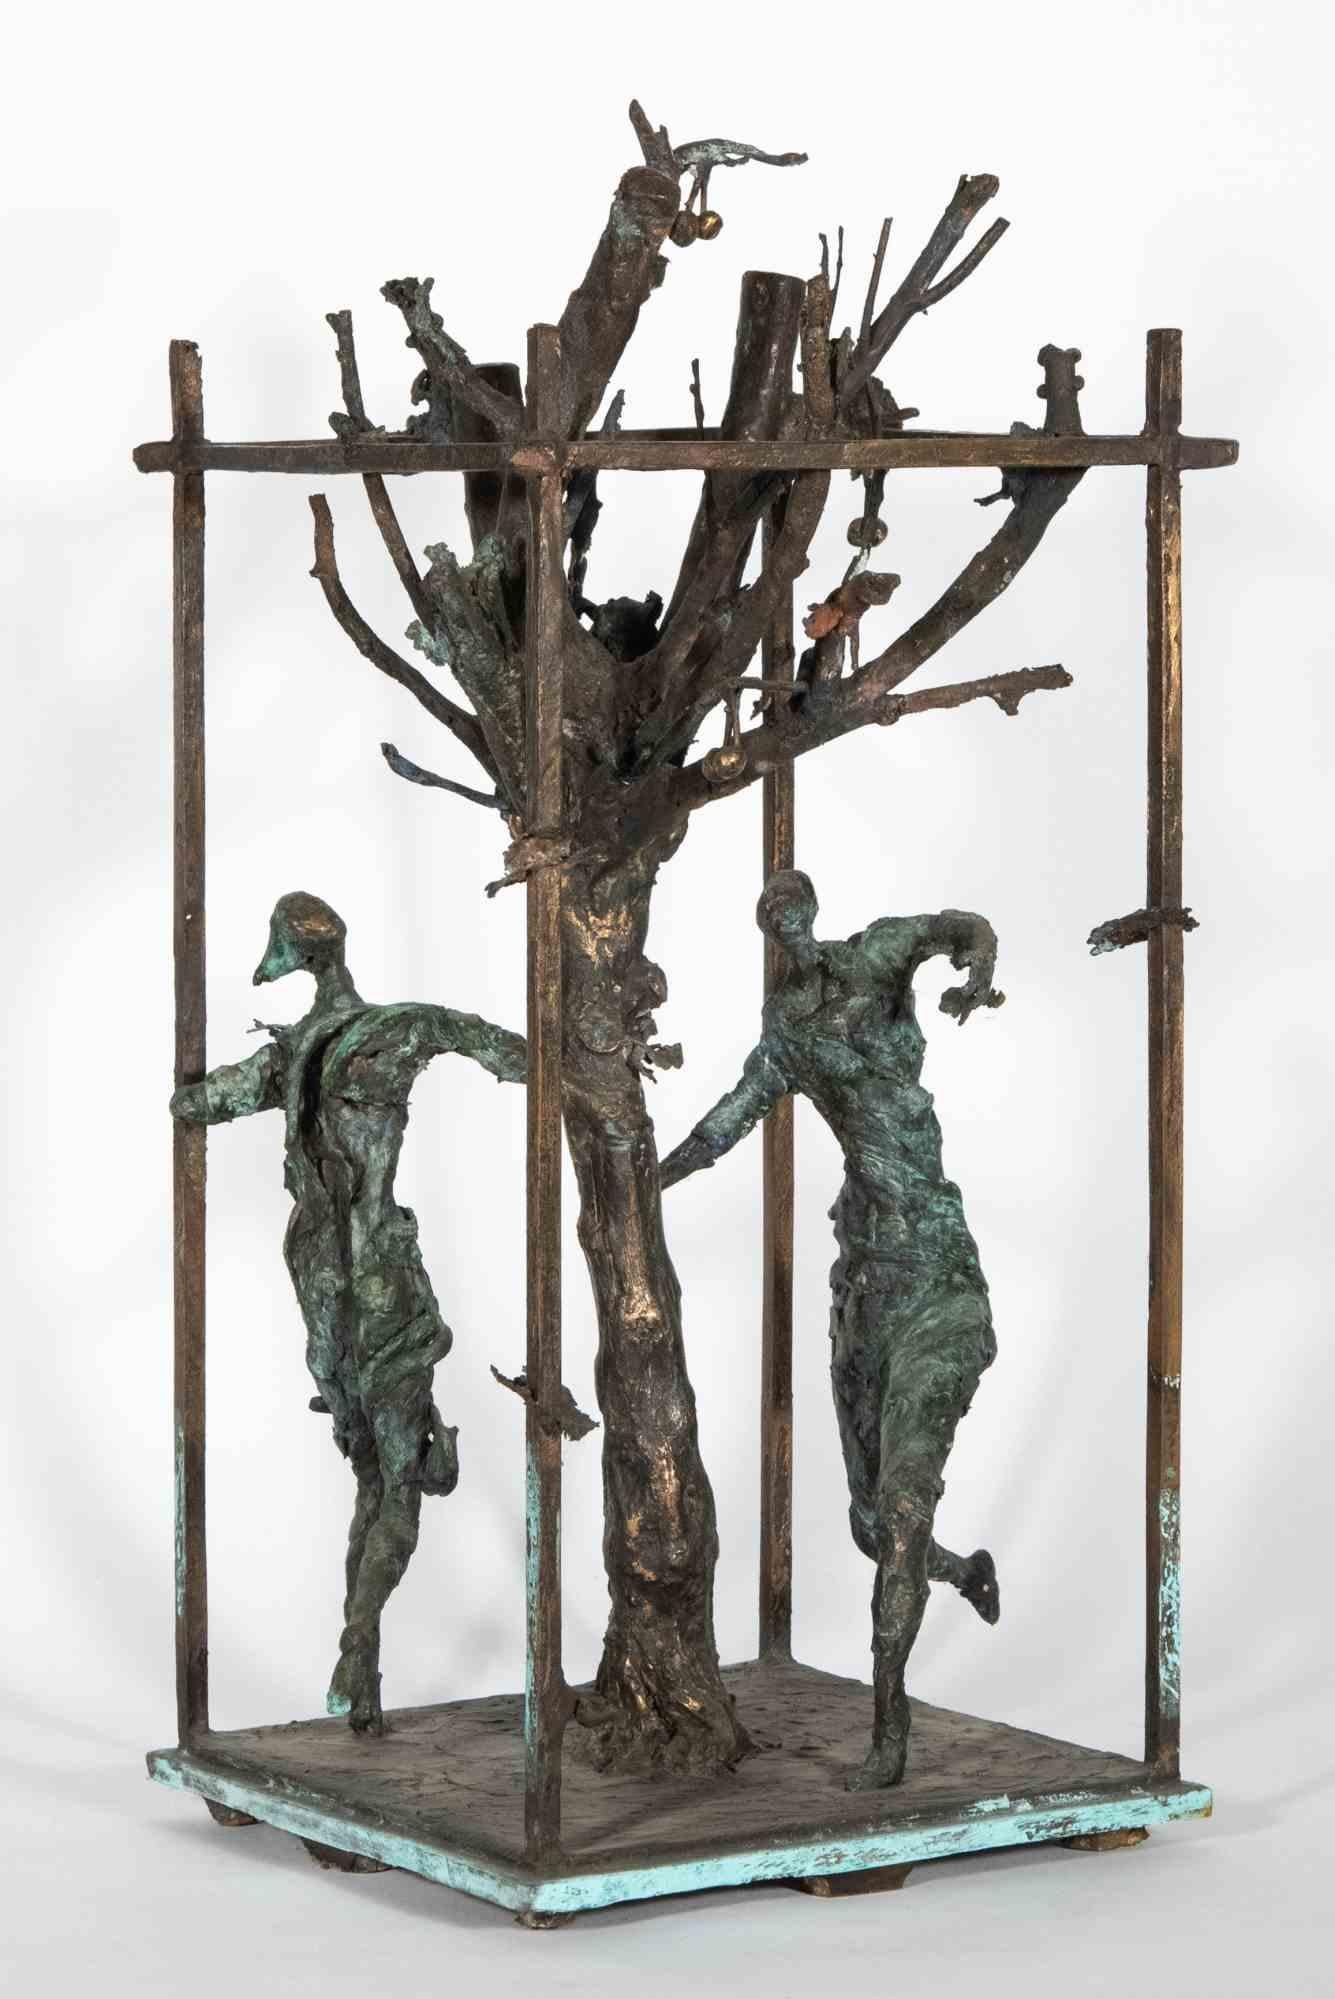 Tiefgründige Skulptur, in ausgezeichnetem Zustand, authentische Bronzeschöpfung von 1996, vorgeschlagen vom Bildhauer Lorenzo Servalli, um die Strenge der Pflicht zu erleben, dargestellt durch den Lebensbaum im Mittelpunkt des Werkes, um den herum